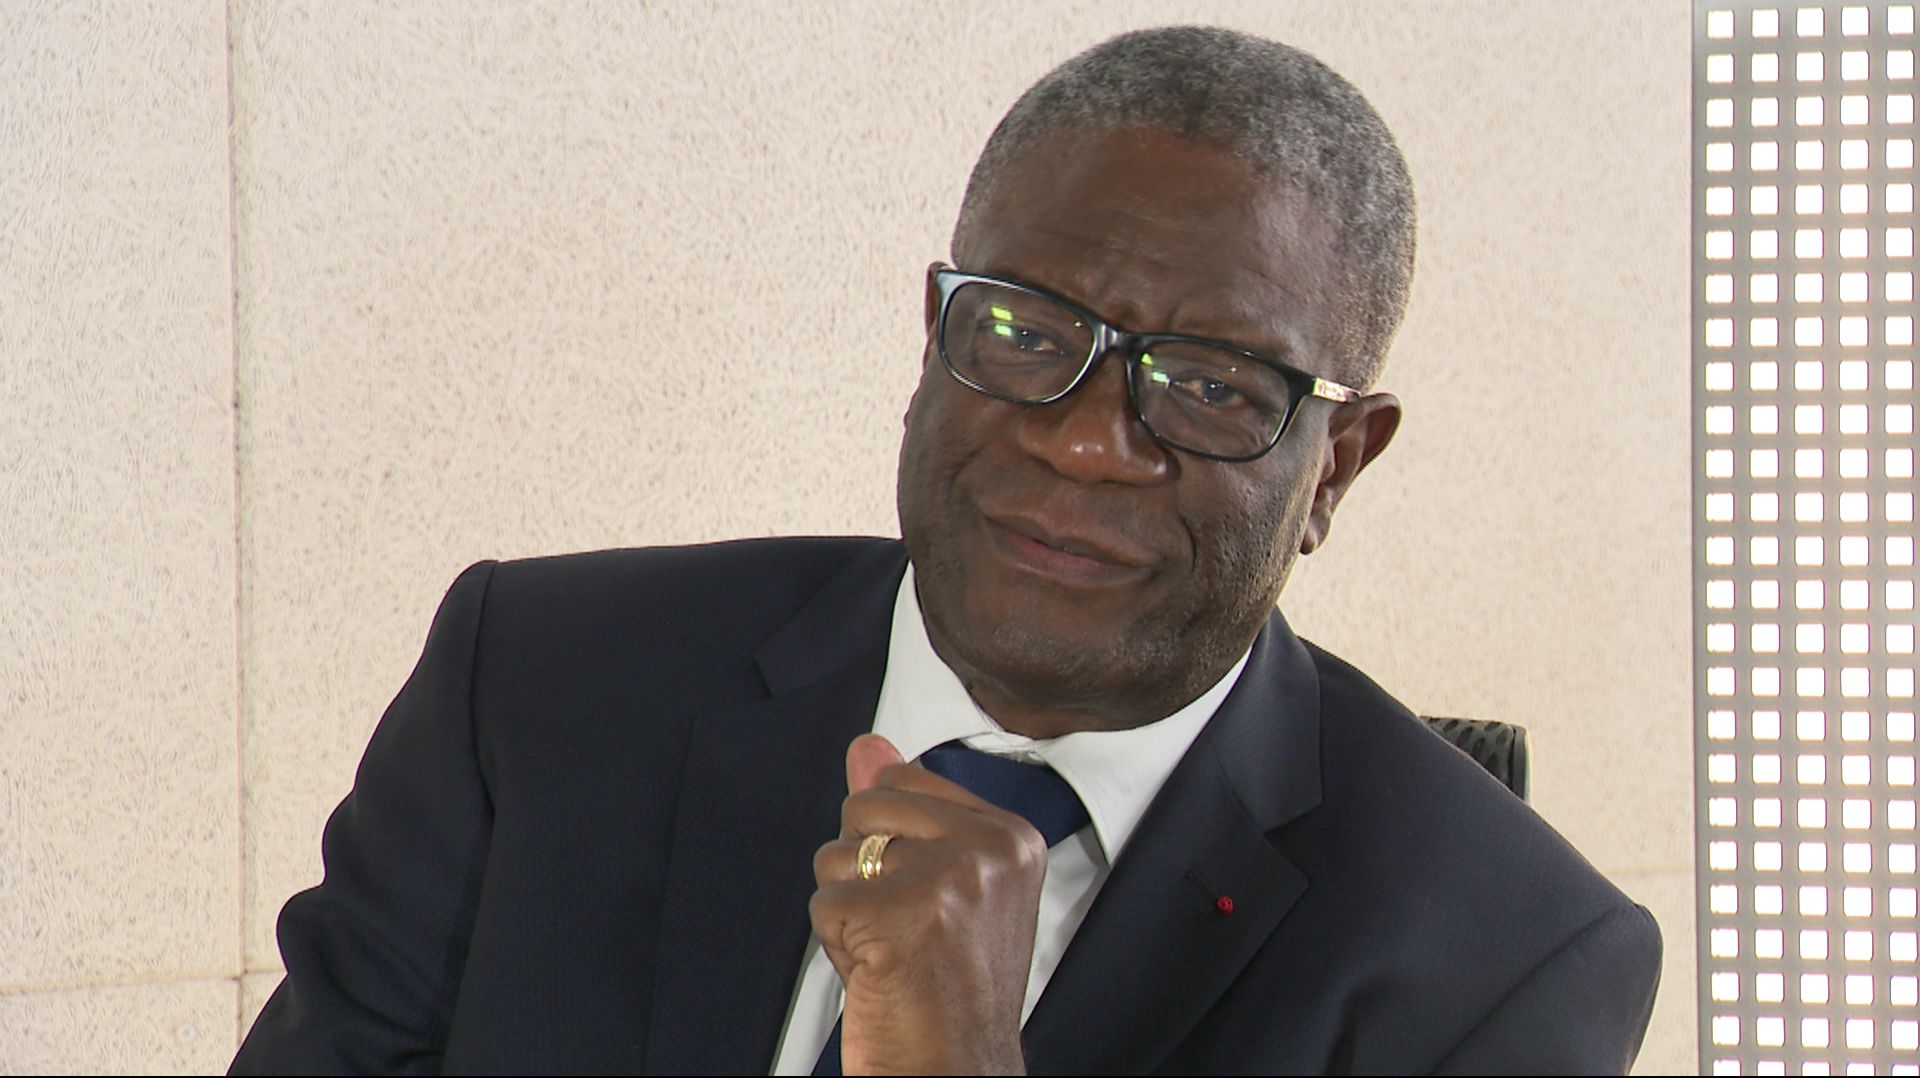 Le docteur Denis Mukwege a aidé d’innombrables femmes victimes de violences sexuelles. Ce qui lui a valu ce surnom : "L’homme qui répare les femmes", qui est aussi le titre d’un film et d’un livre.